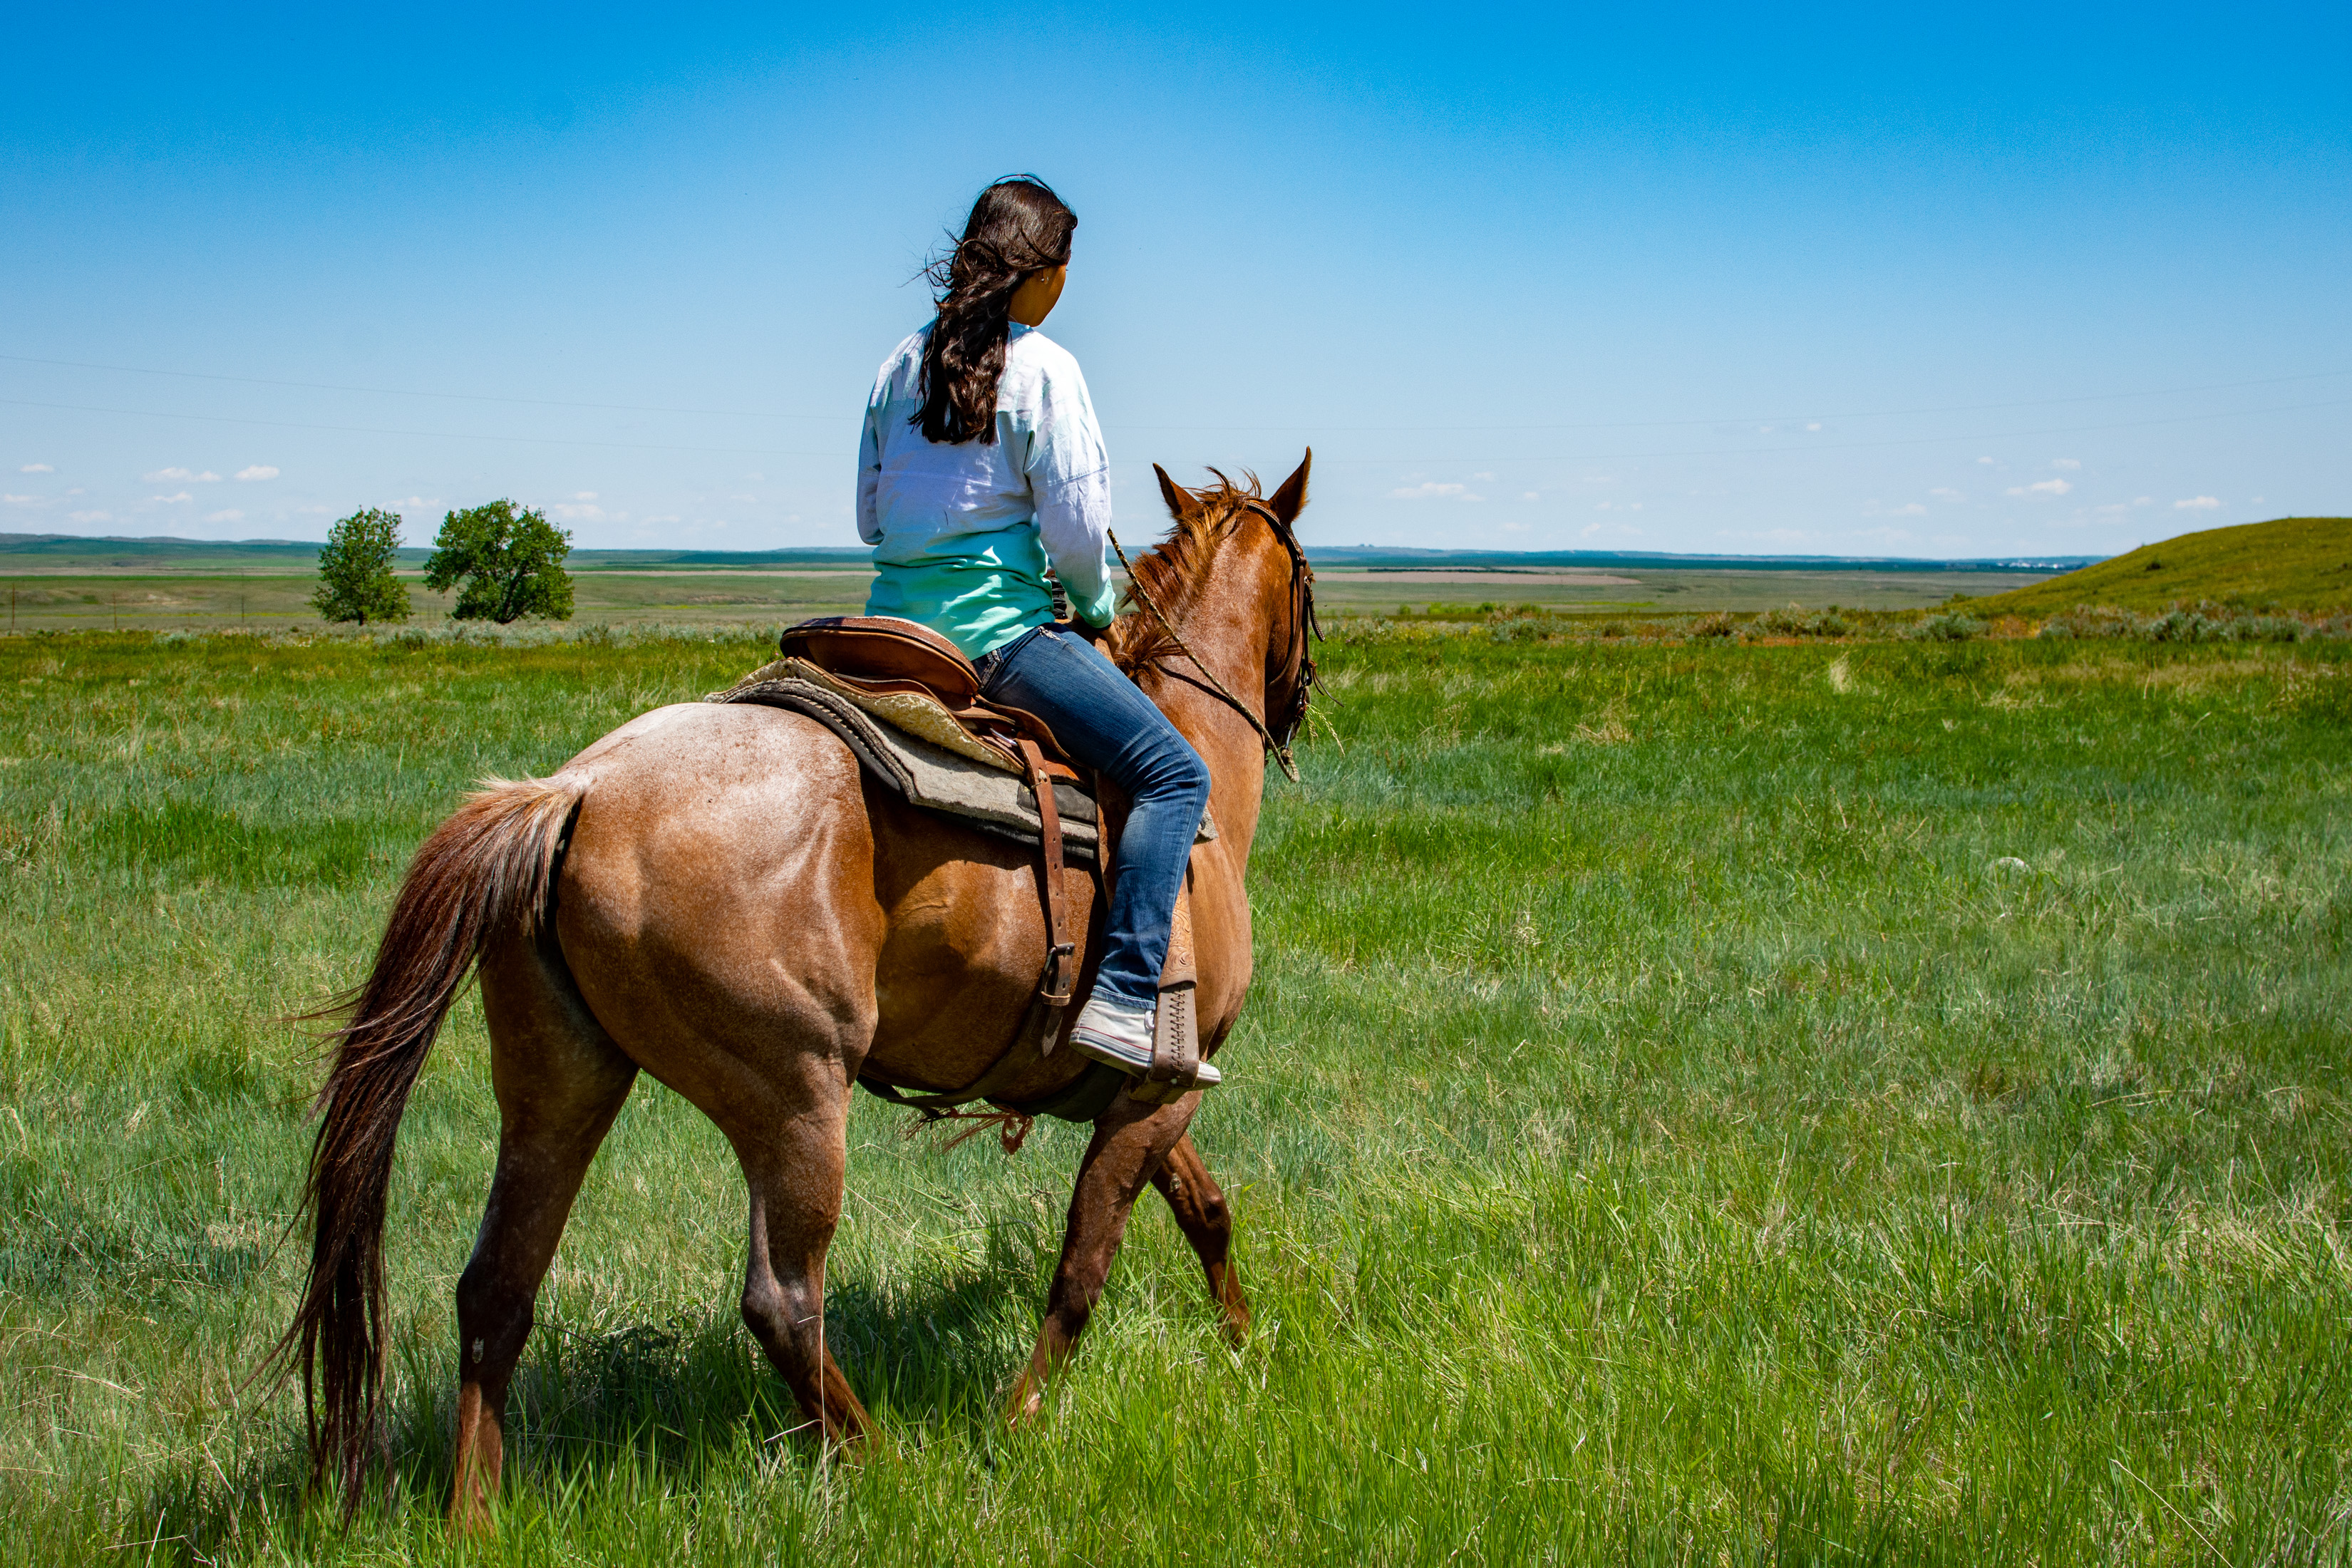 Ехал на коне вел. Прогулка на лошадях. Лошади на лугу. Девушка с лошадью. Девушка сидит на лошади.